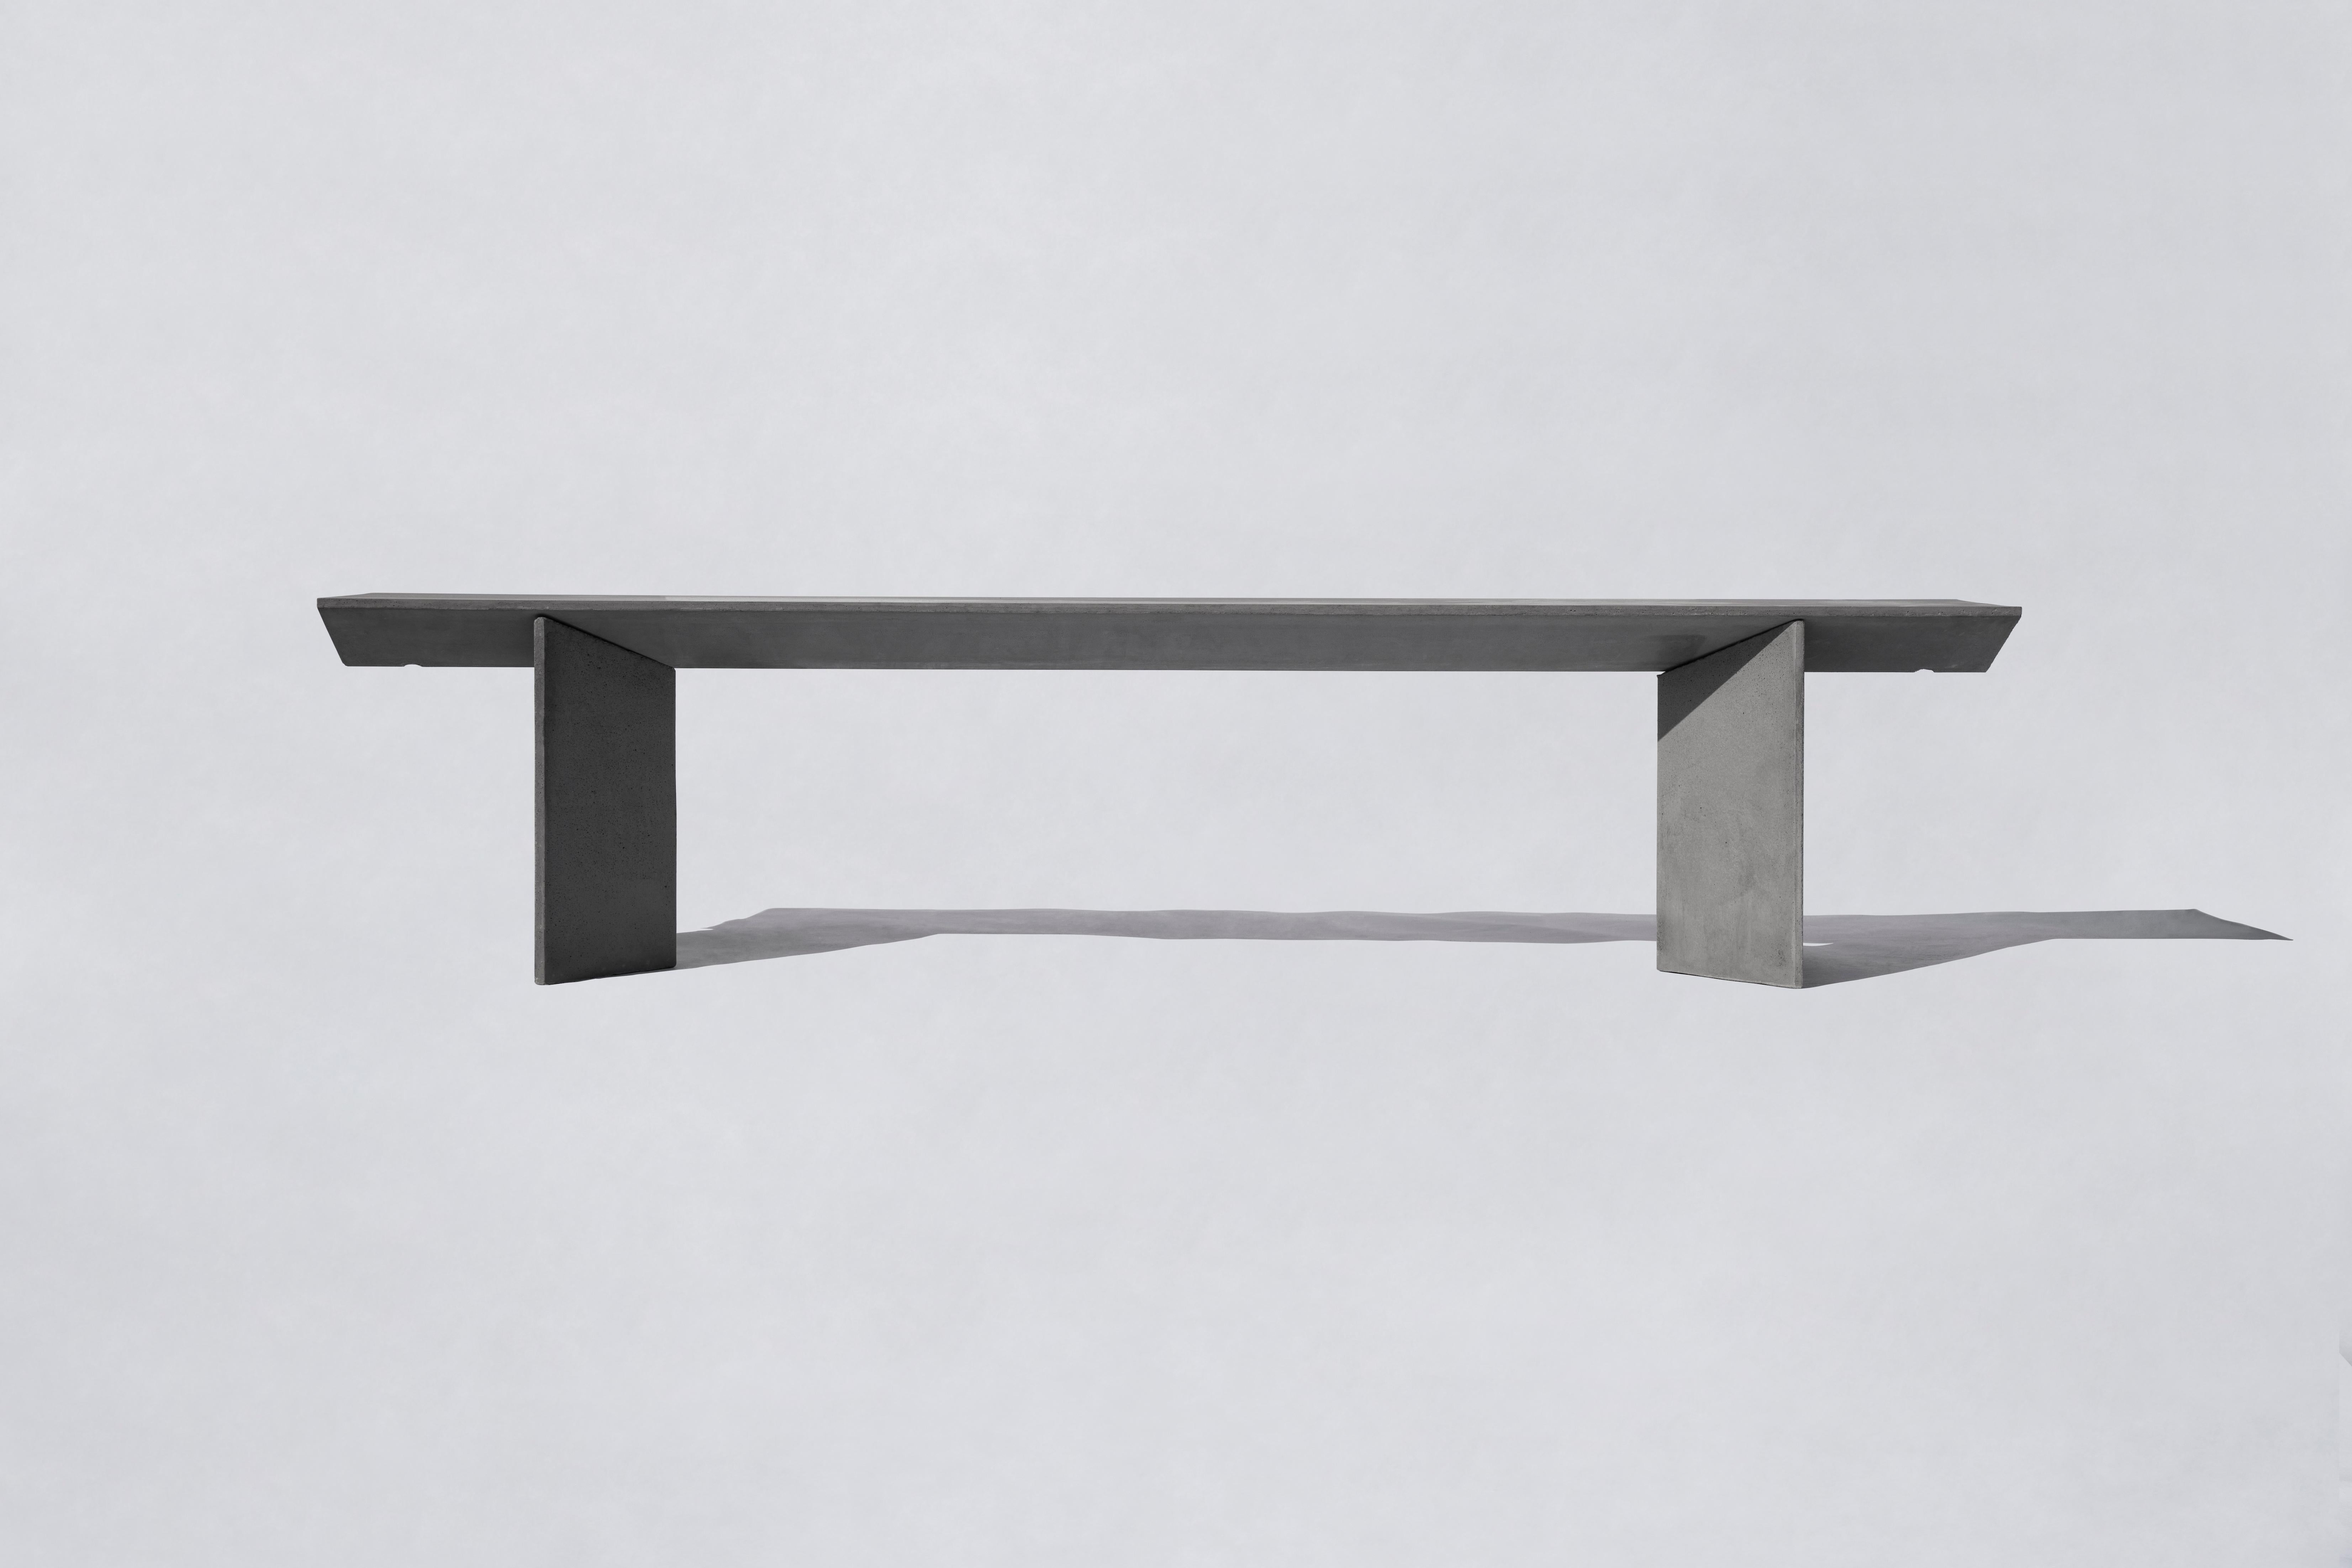 LIANG 1 Sitzbank von Bentu Design

Beton
Maße: 2000×400×445 mm 
140 kg
Verwendung im Freien: OK

--
Bentu Desing ist ein in Guangzhou ansässiges experimentelles Designstudio, das durch die Erfindung neuer Medien Konzepte für Produkt, Raum